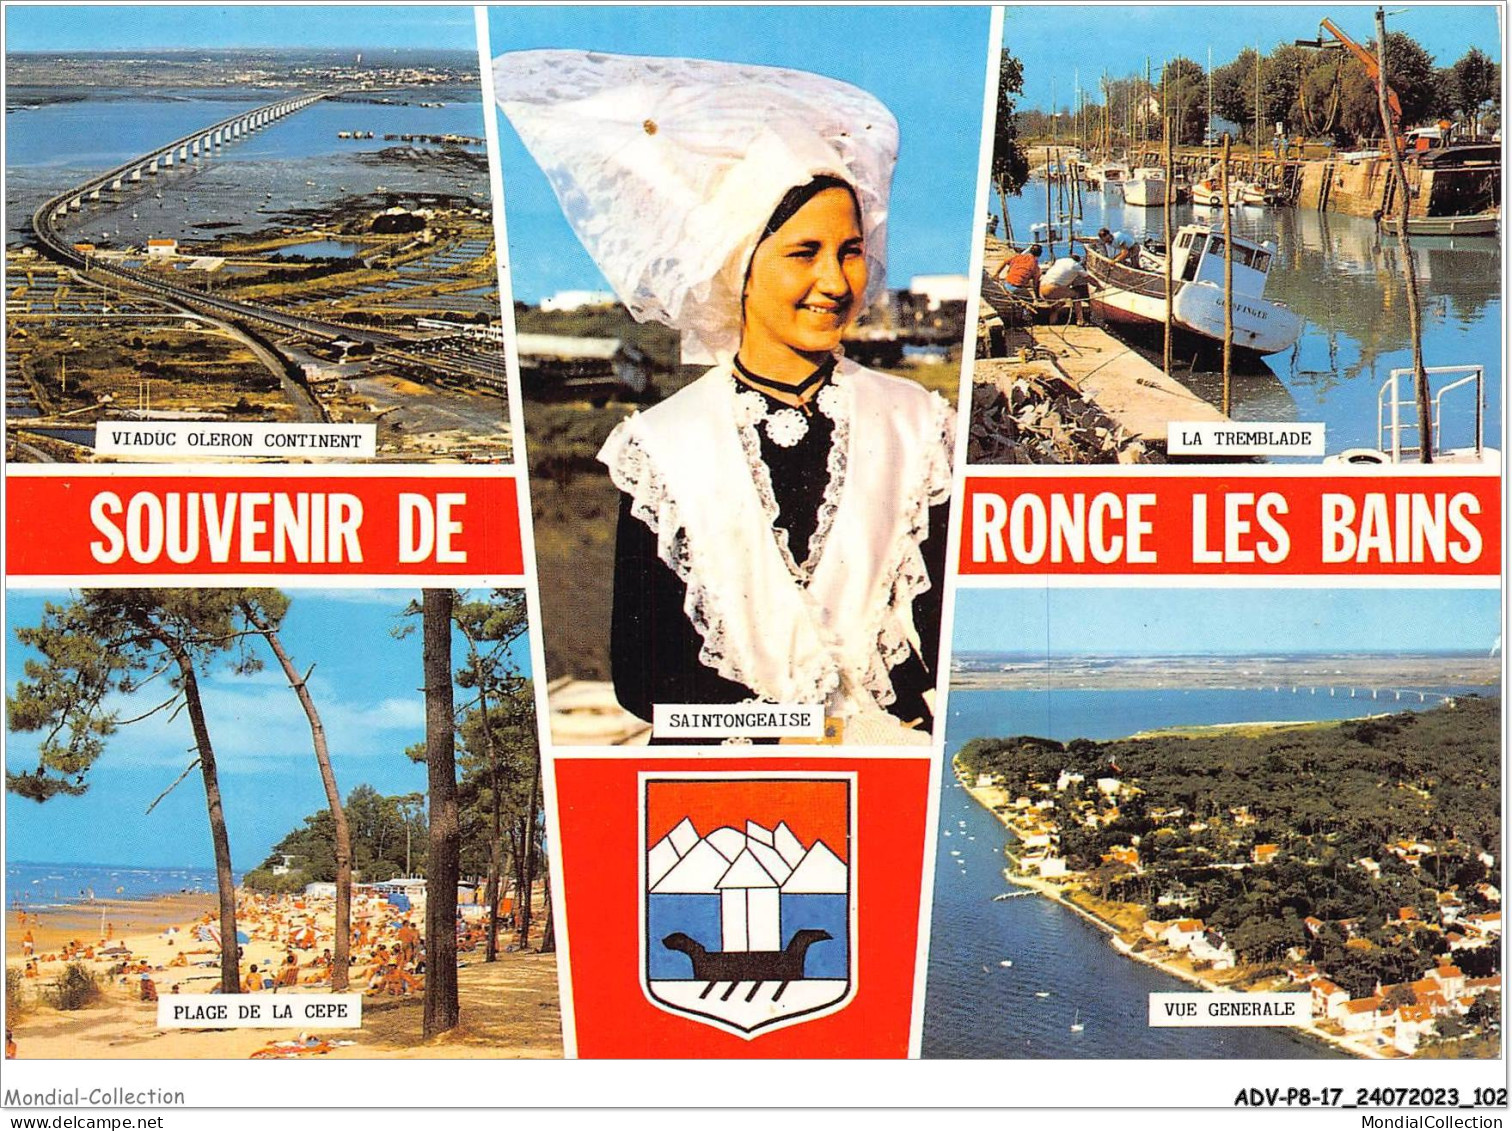 ADVP8-17-0660 - SOUVENIR DE RONCE LES BAINS - Char-mar  - La Tremblade